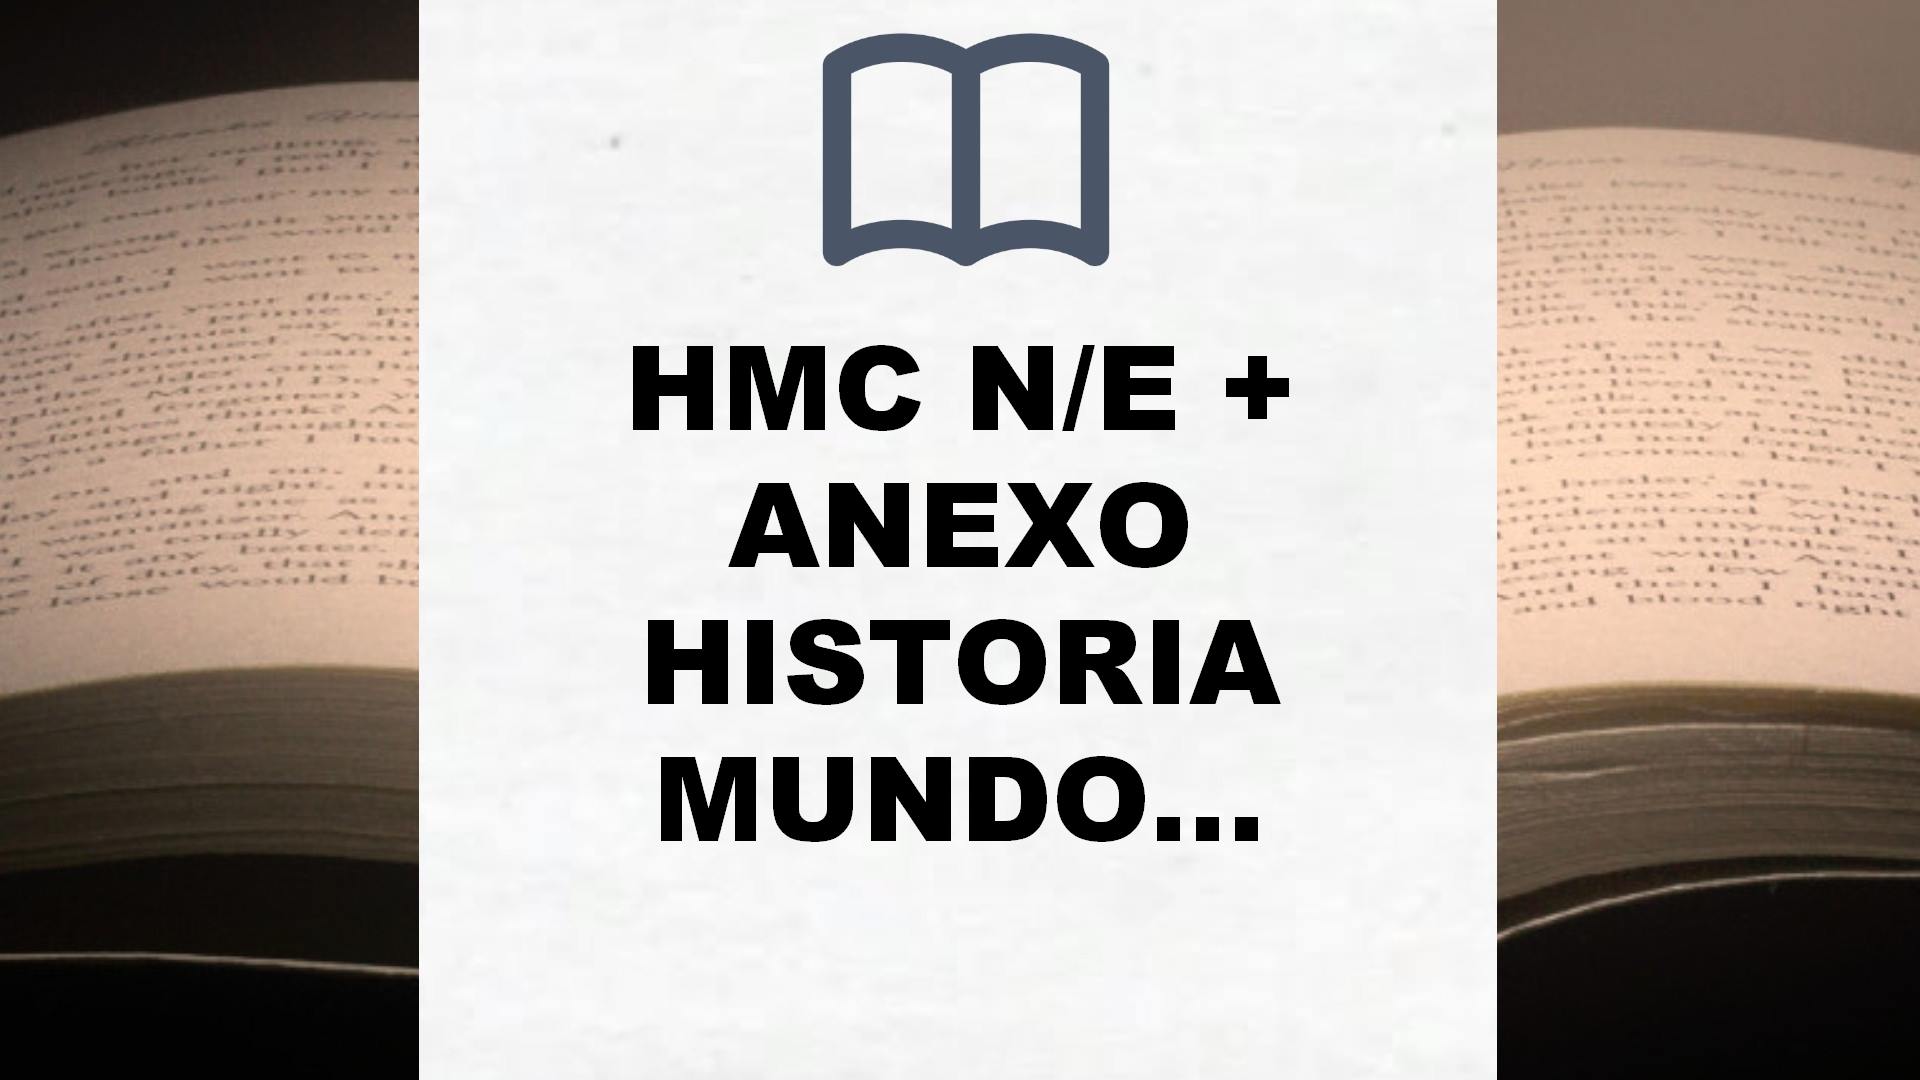 HMC N/E + ANEXO HISTORIA MUNDO CONTEMP N/C: 000002 – 9788468238968 – Reseña del libro